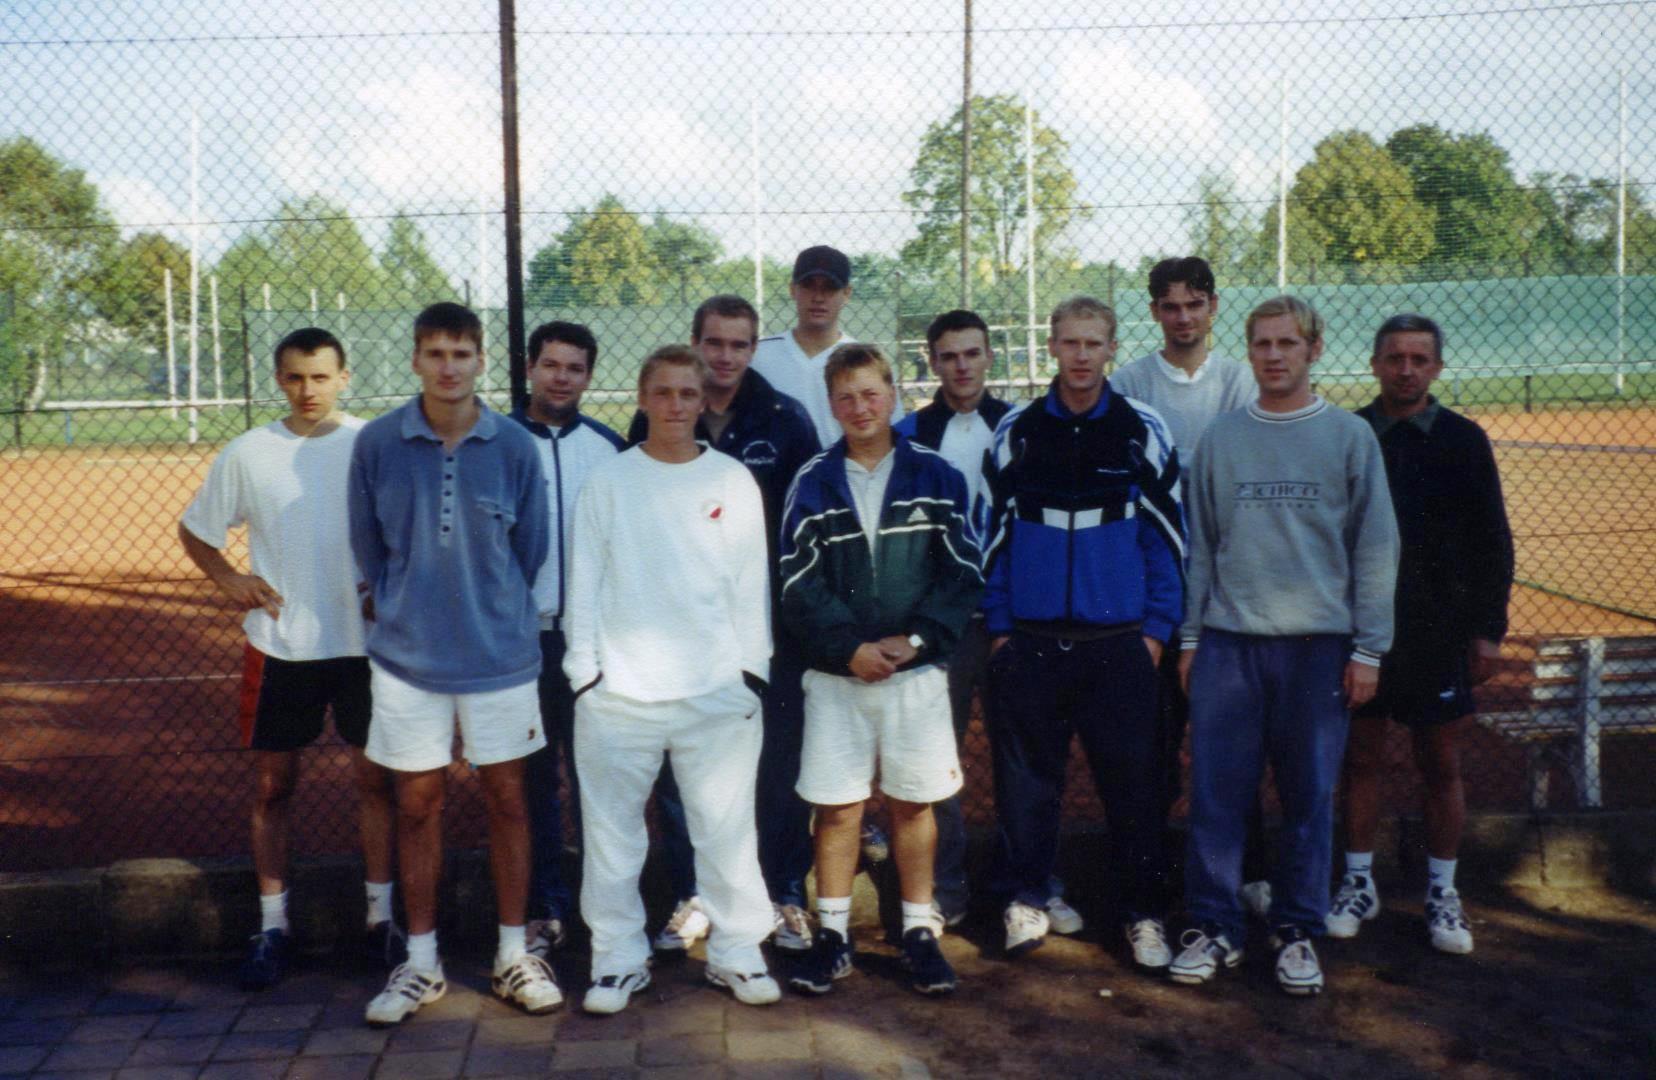 Tennis-Cup Großräschen 2001, Sieger: Martin Ulbrich (4. v. l.)